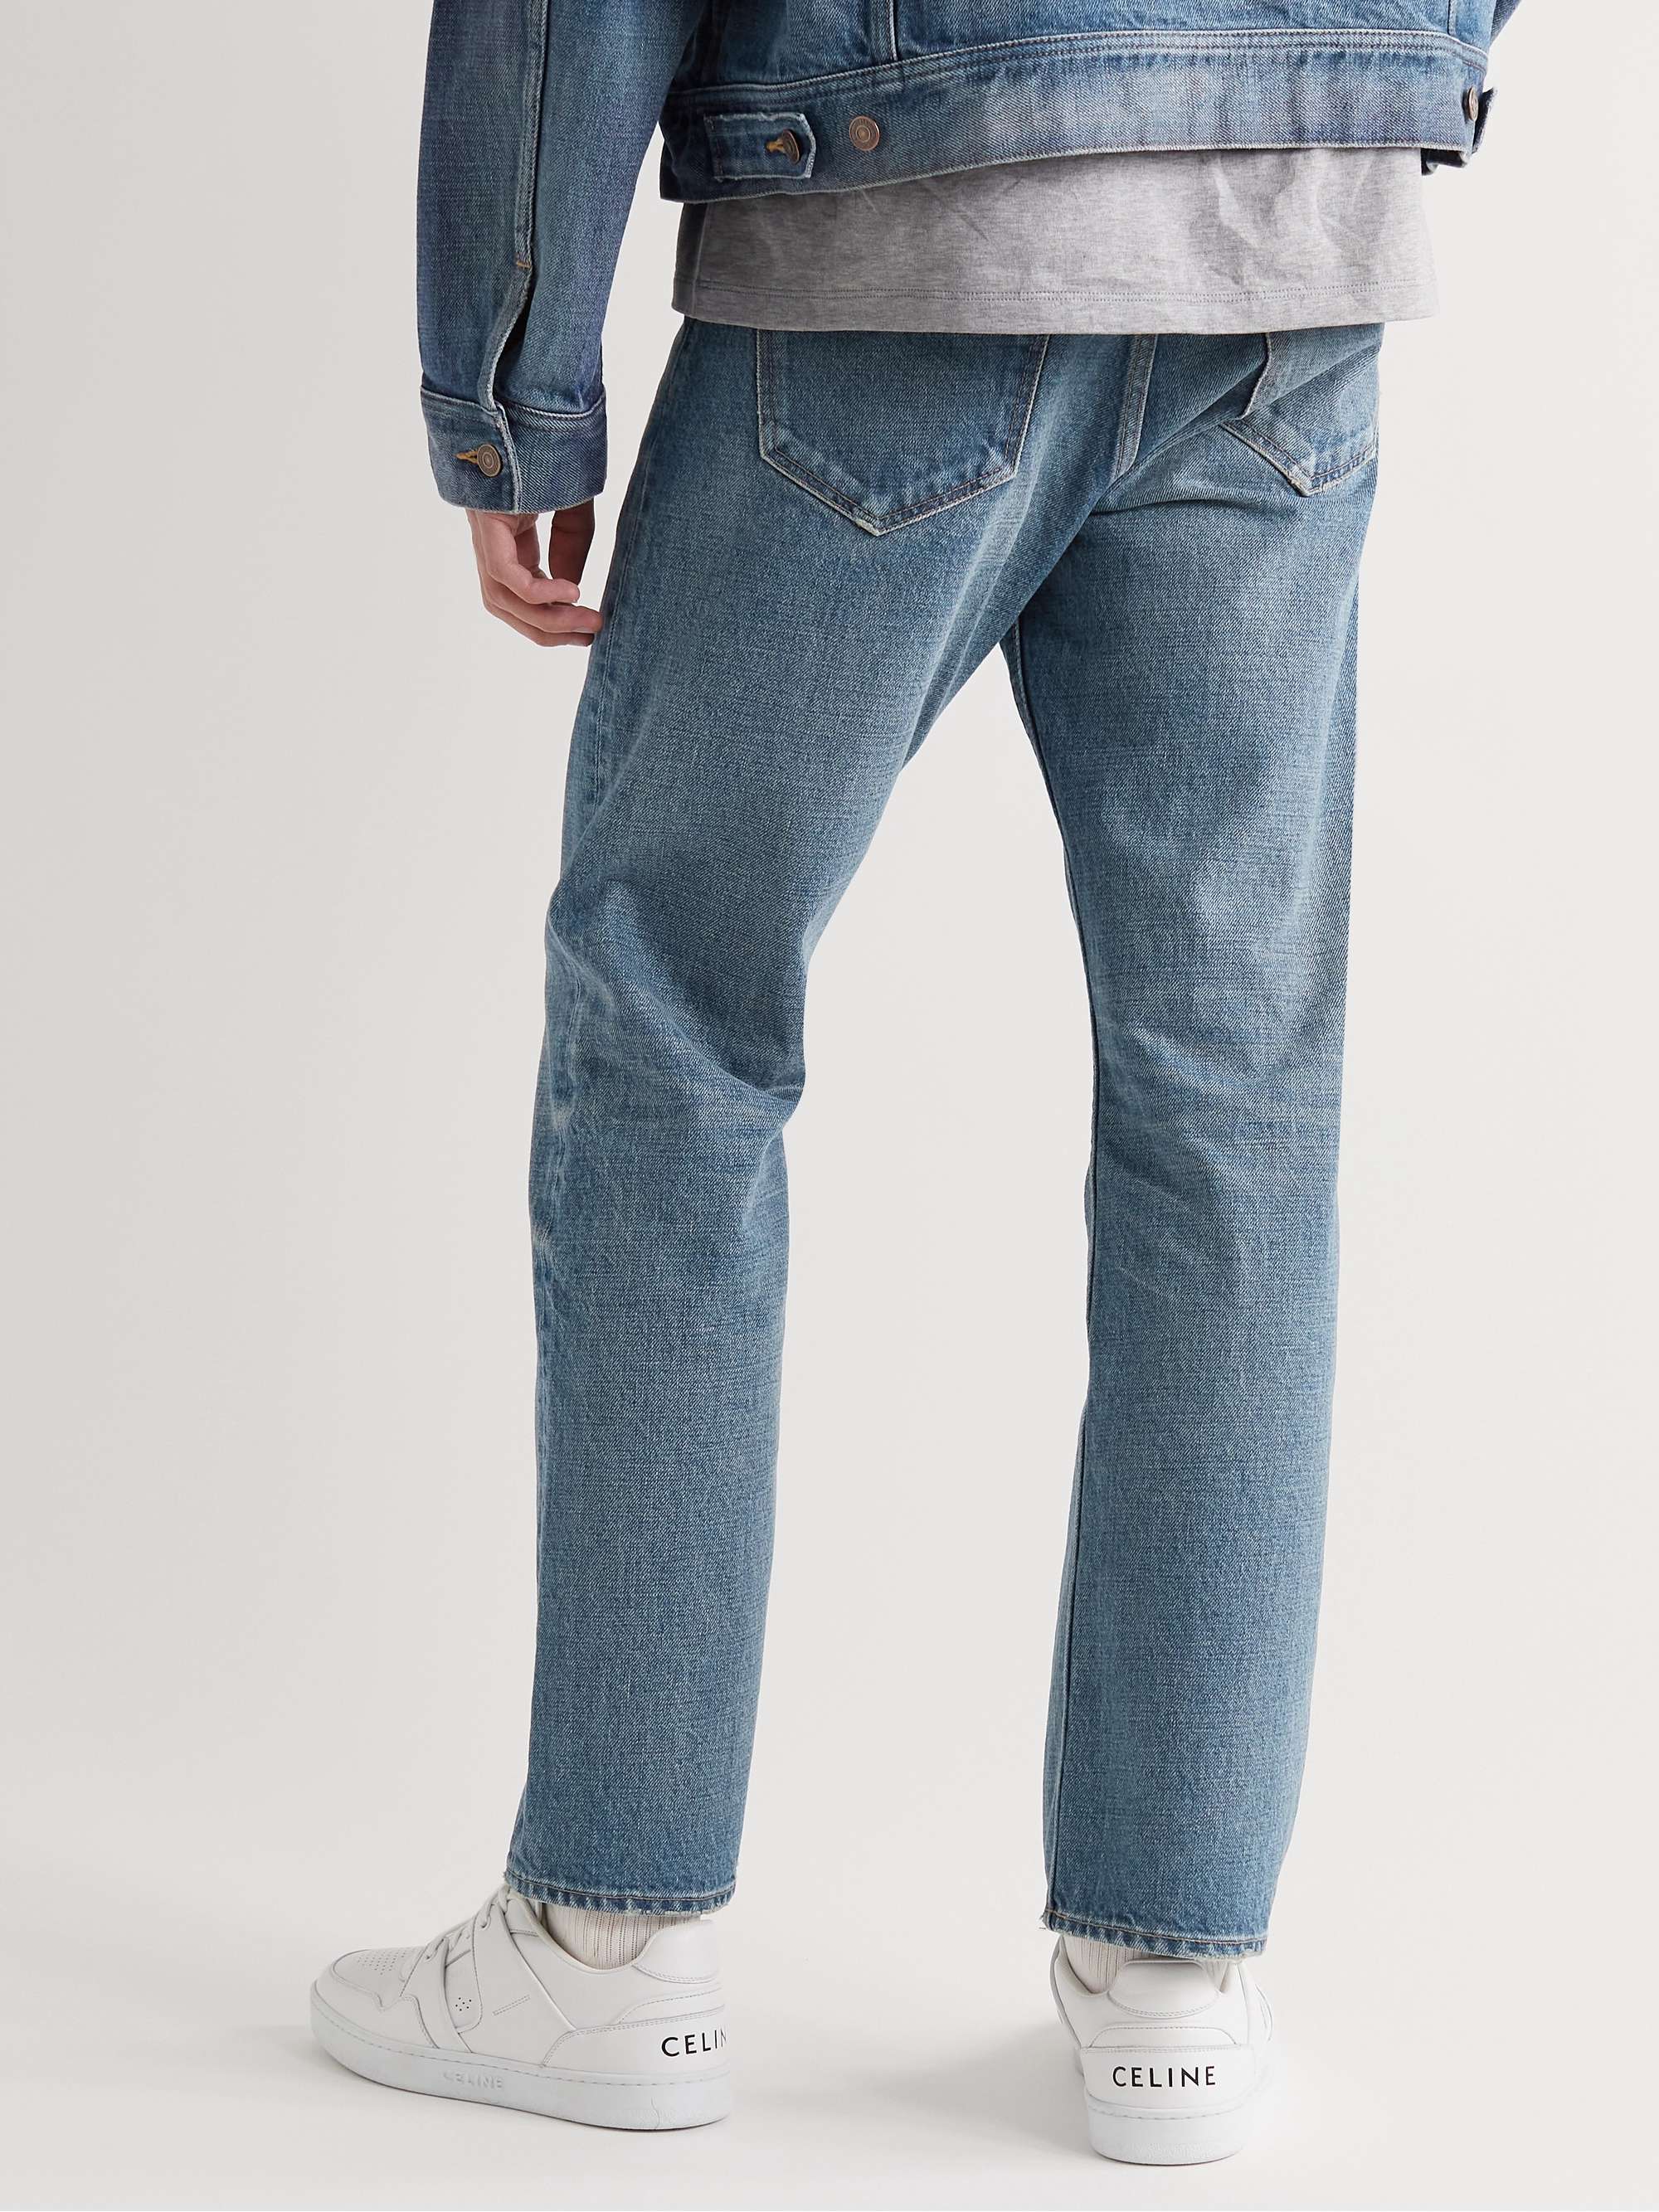 CELINE HOMME Kurt Straight-Leg Jeans